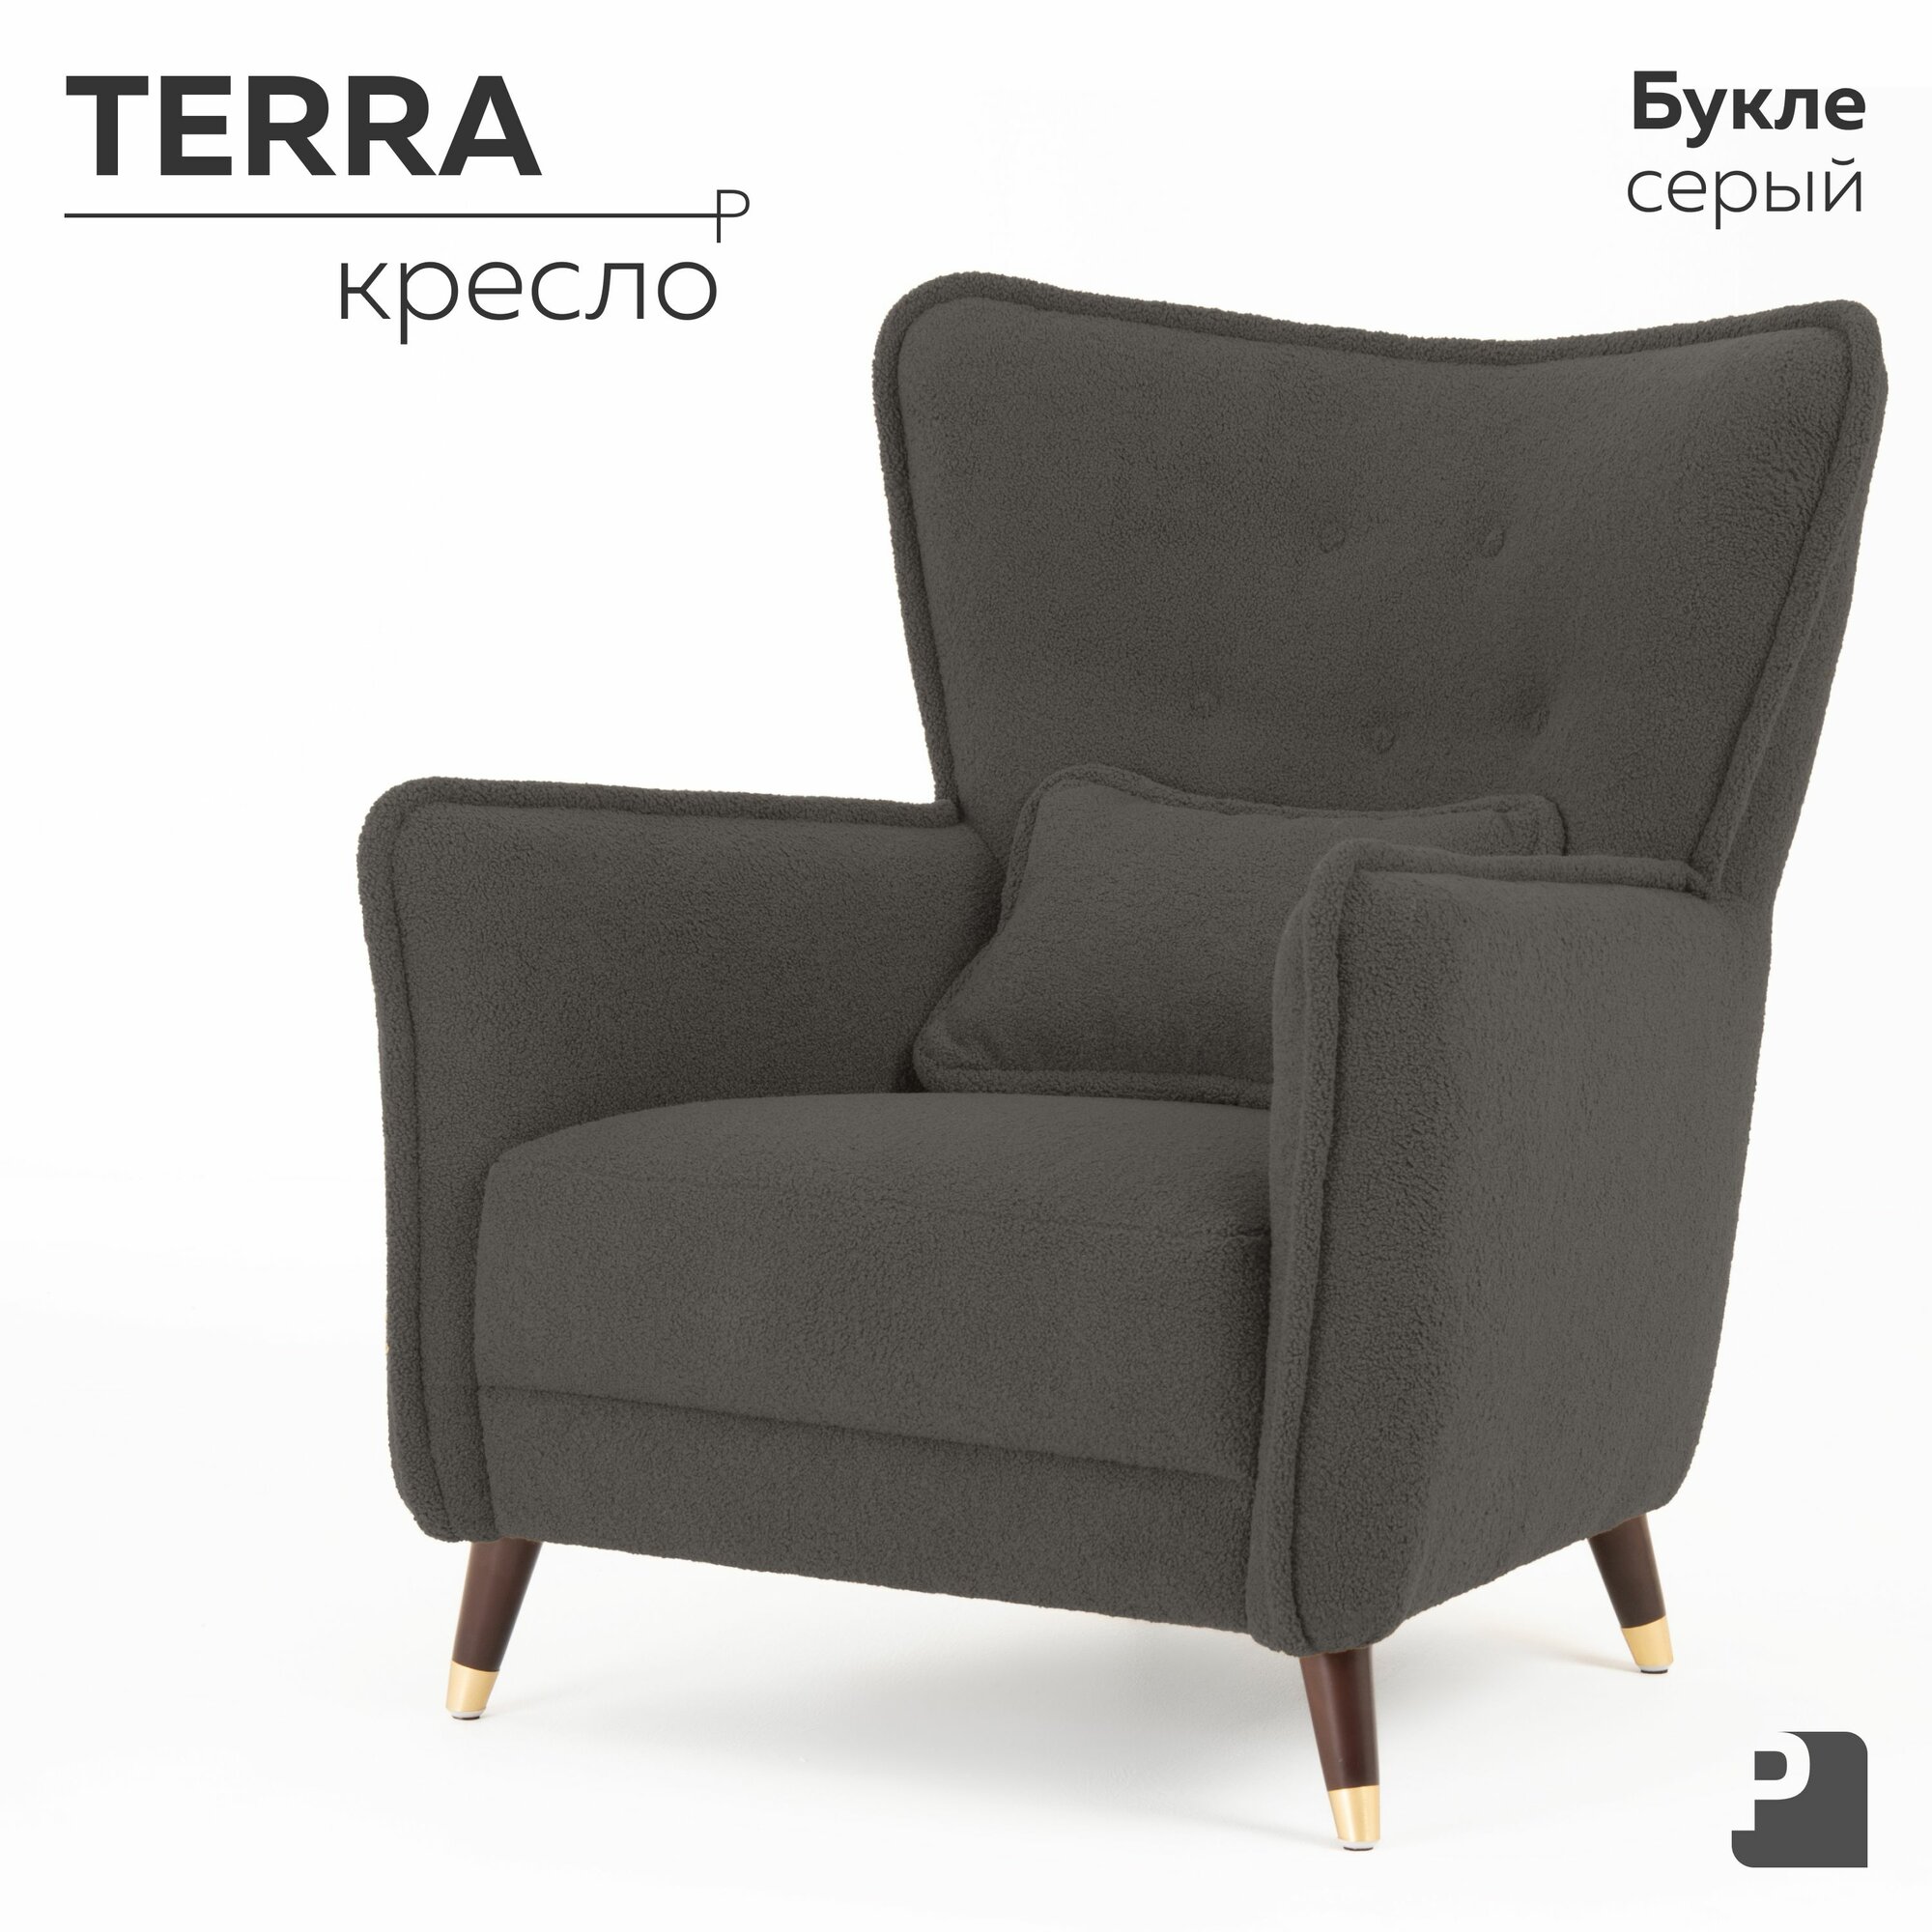 Кресло мягкое TERRA интерьерное для отдыха, на деревянных ножках, для дома, гостиной, офиса, для дачи, на балкон, Букле Серый